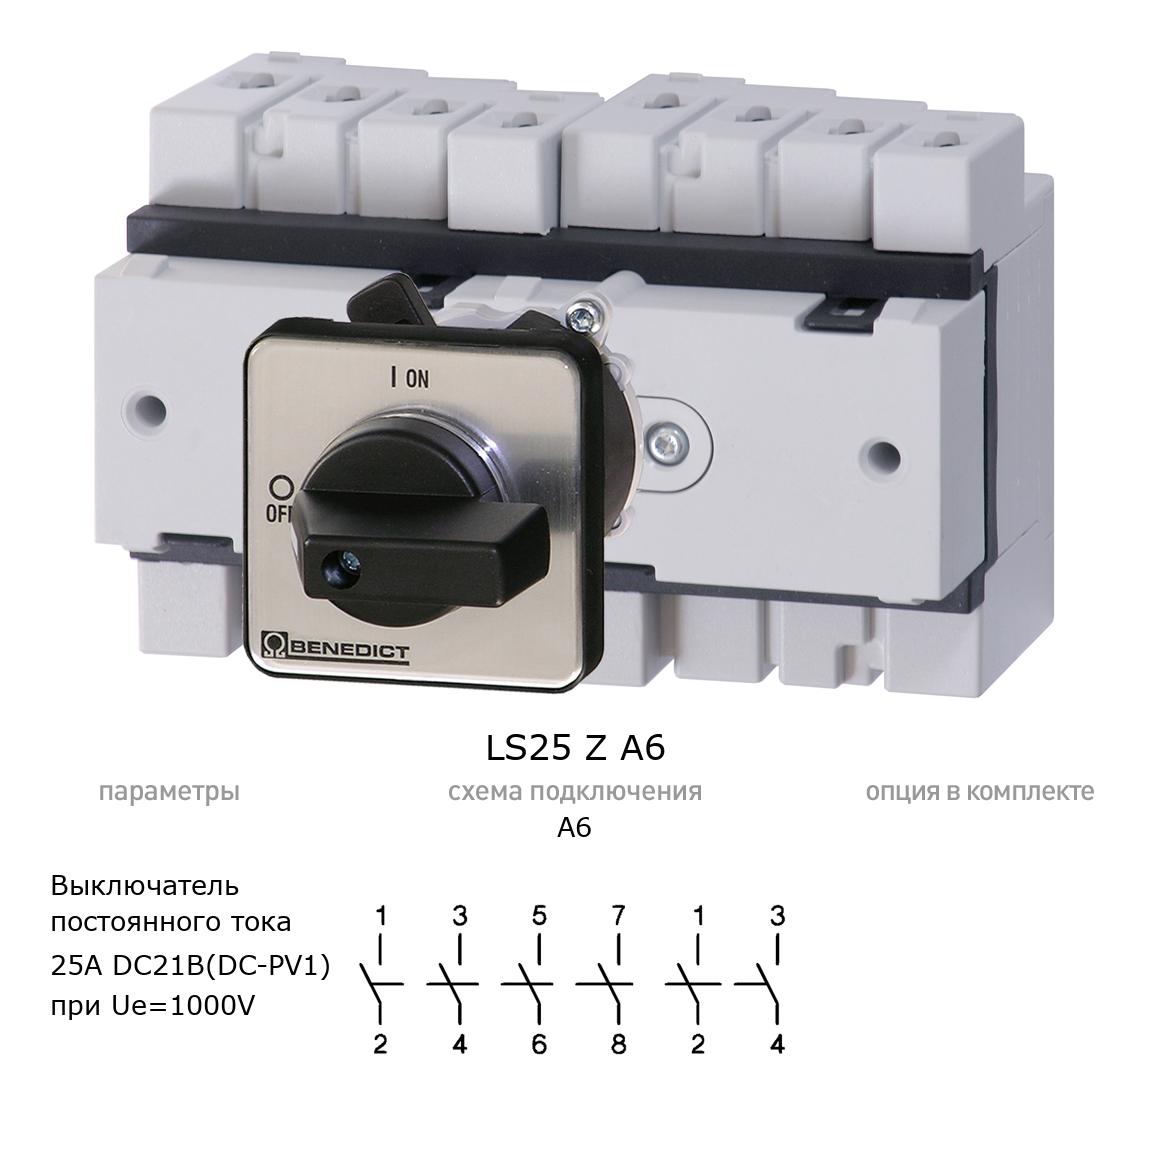 Кулачковый переключатель для постоянного тока (DC) LS25 Z A6 BENEDICT